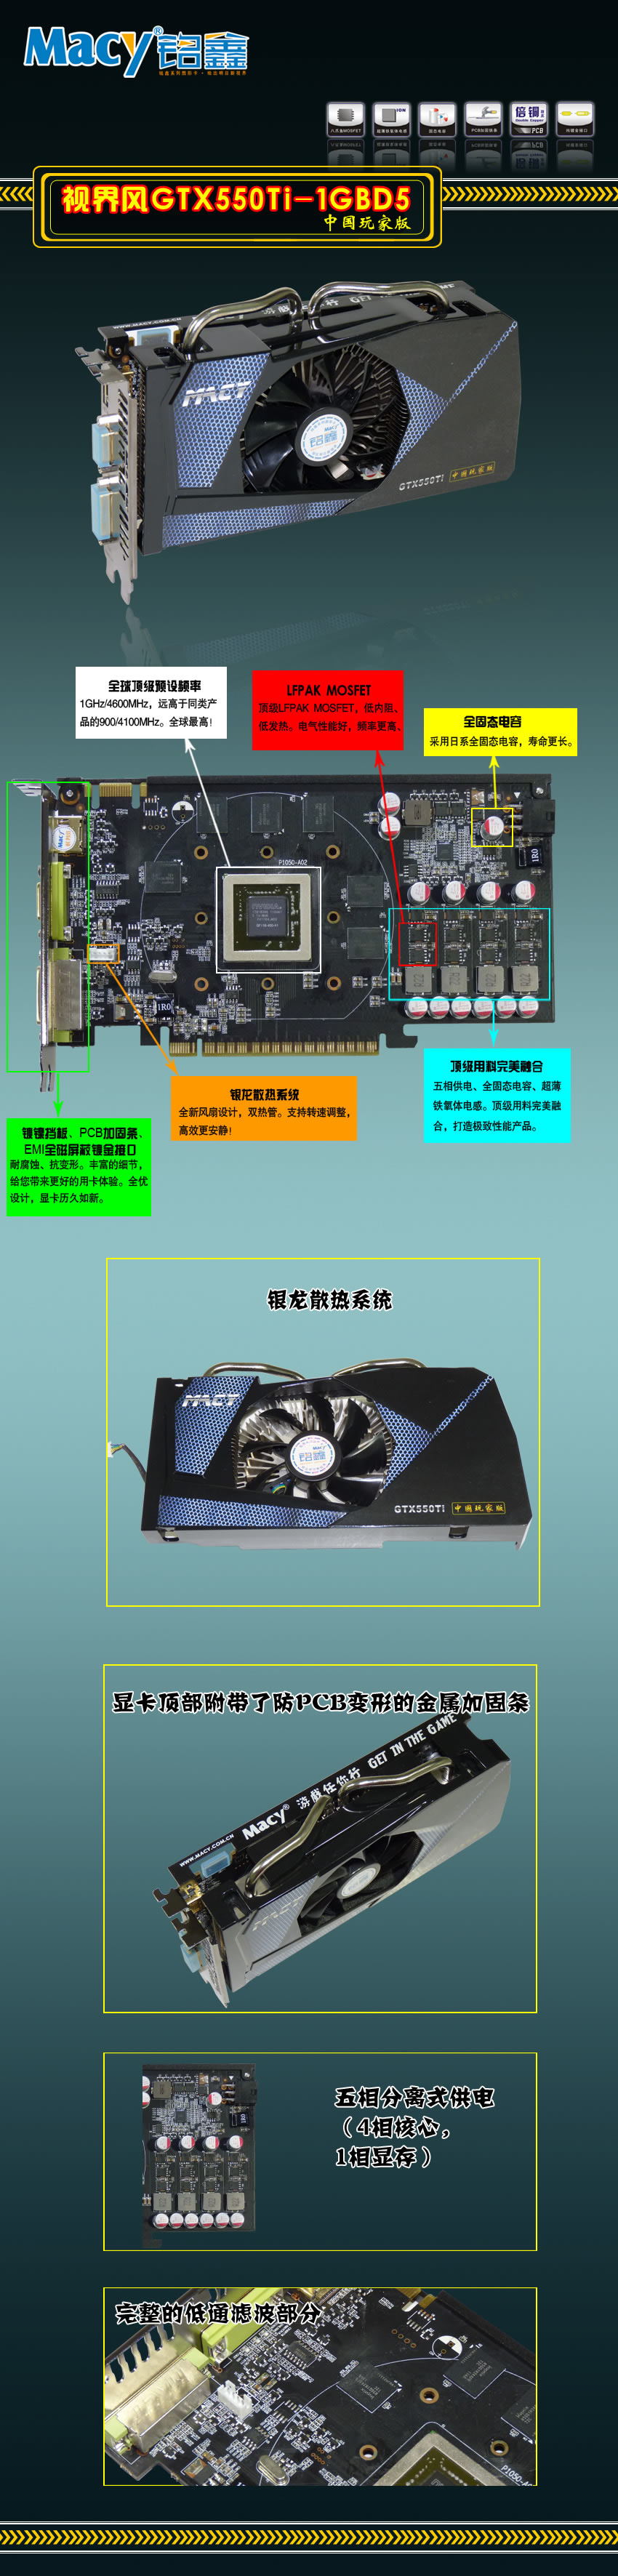 GTX550Ti-1GBD5-CU.jpg